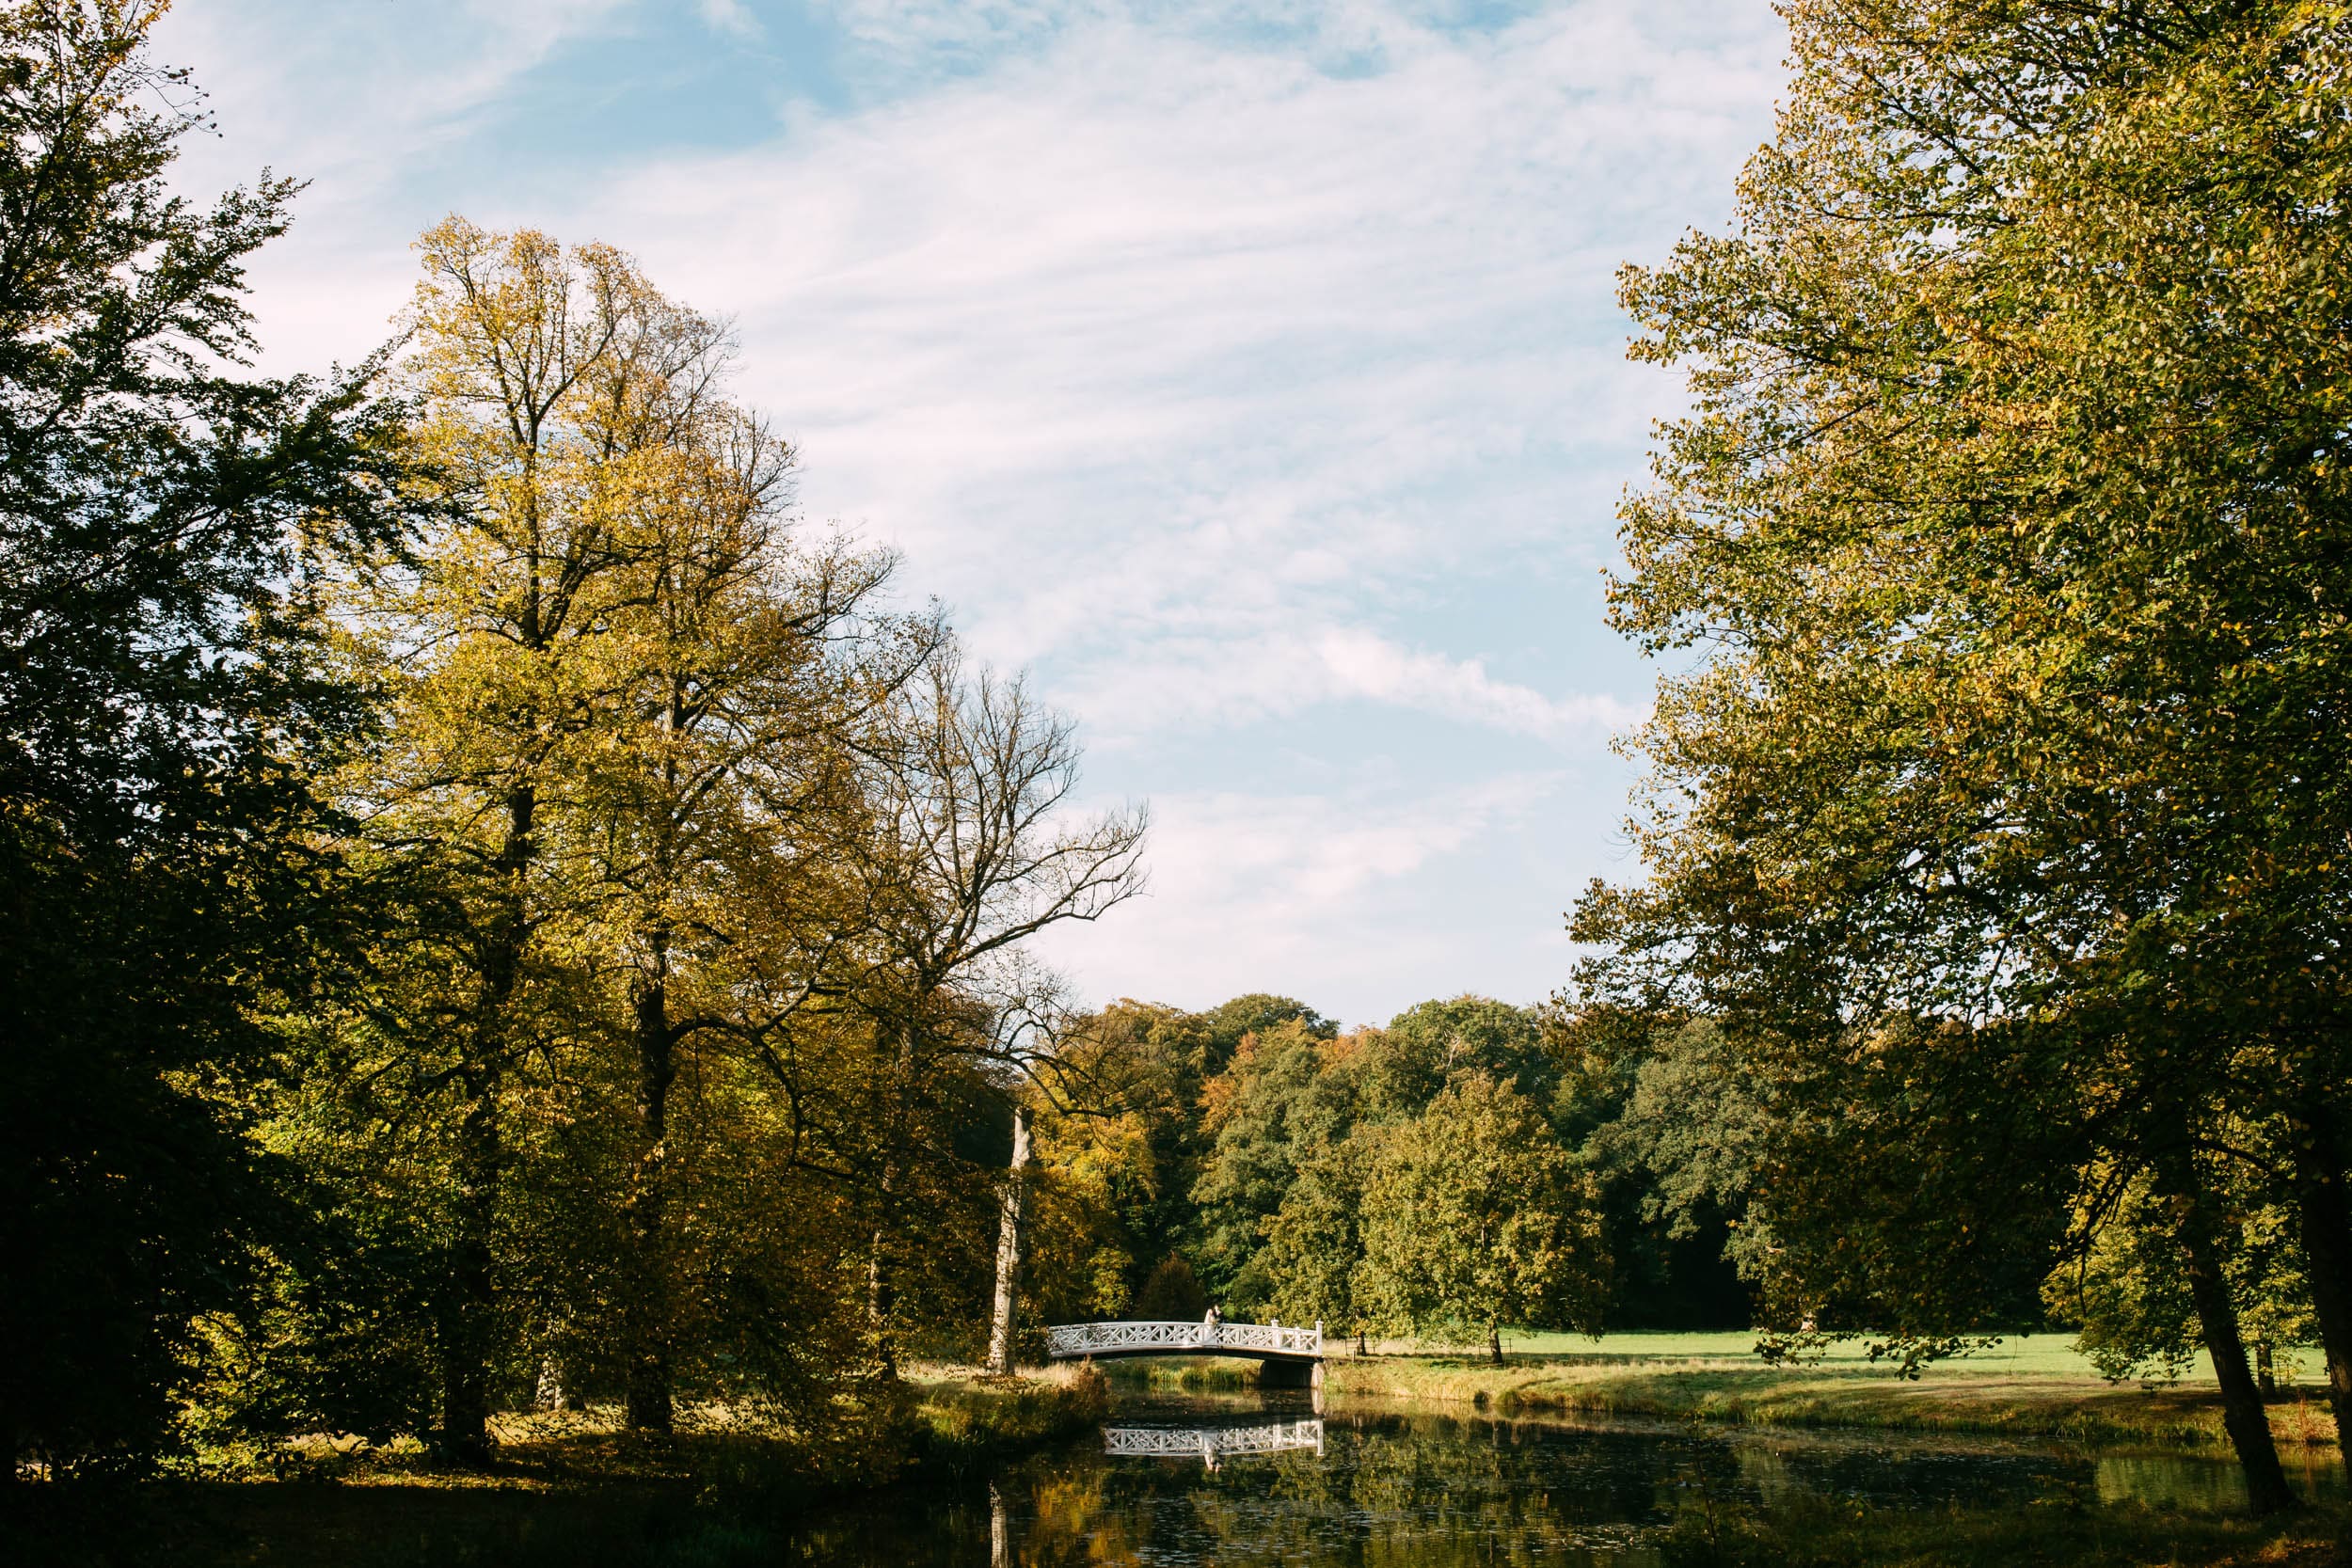 De Orangerie in Elswout is een oase van rust, met een vijver omgeven door weelderige bomen en verbonden door een charmante brug.